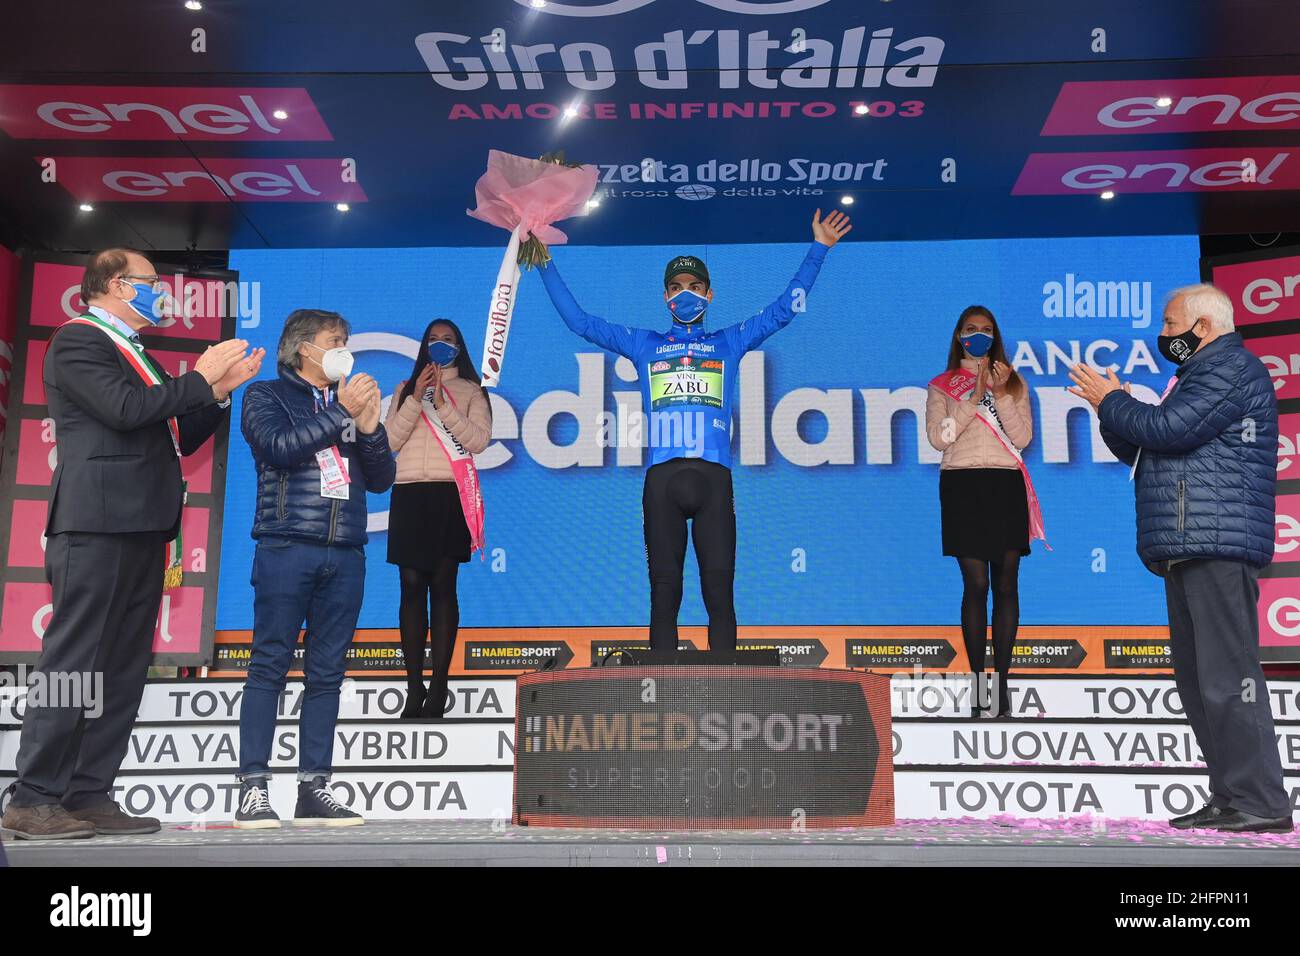 Gian Mattia D'Alberto/LaPresse October 18, 2020 Italy Sport Cycling Giro d'Italia 2020 - 103th edition - Stage 15 - from Air base Rivolto to Piancavallo In the pic: Giovanni Visconti (Vini Zabu' - Brado - KTM)), blue jersey Stock Photo